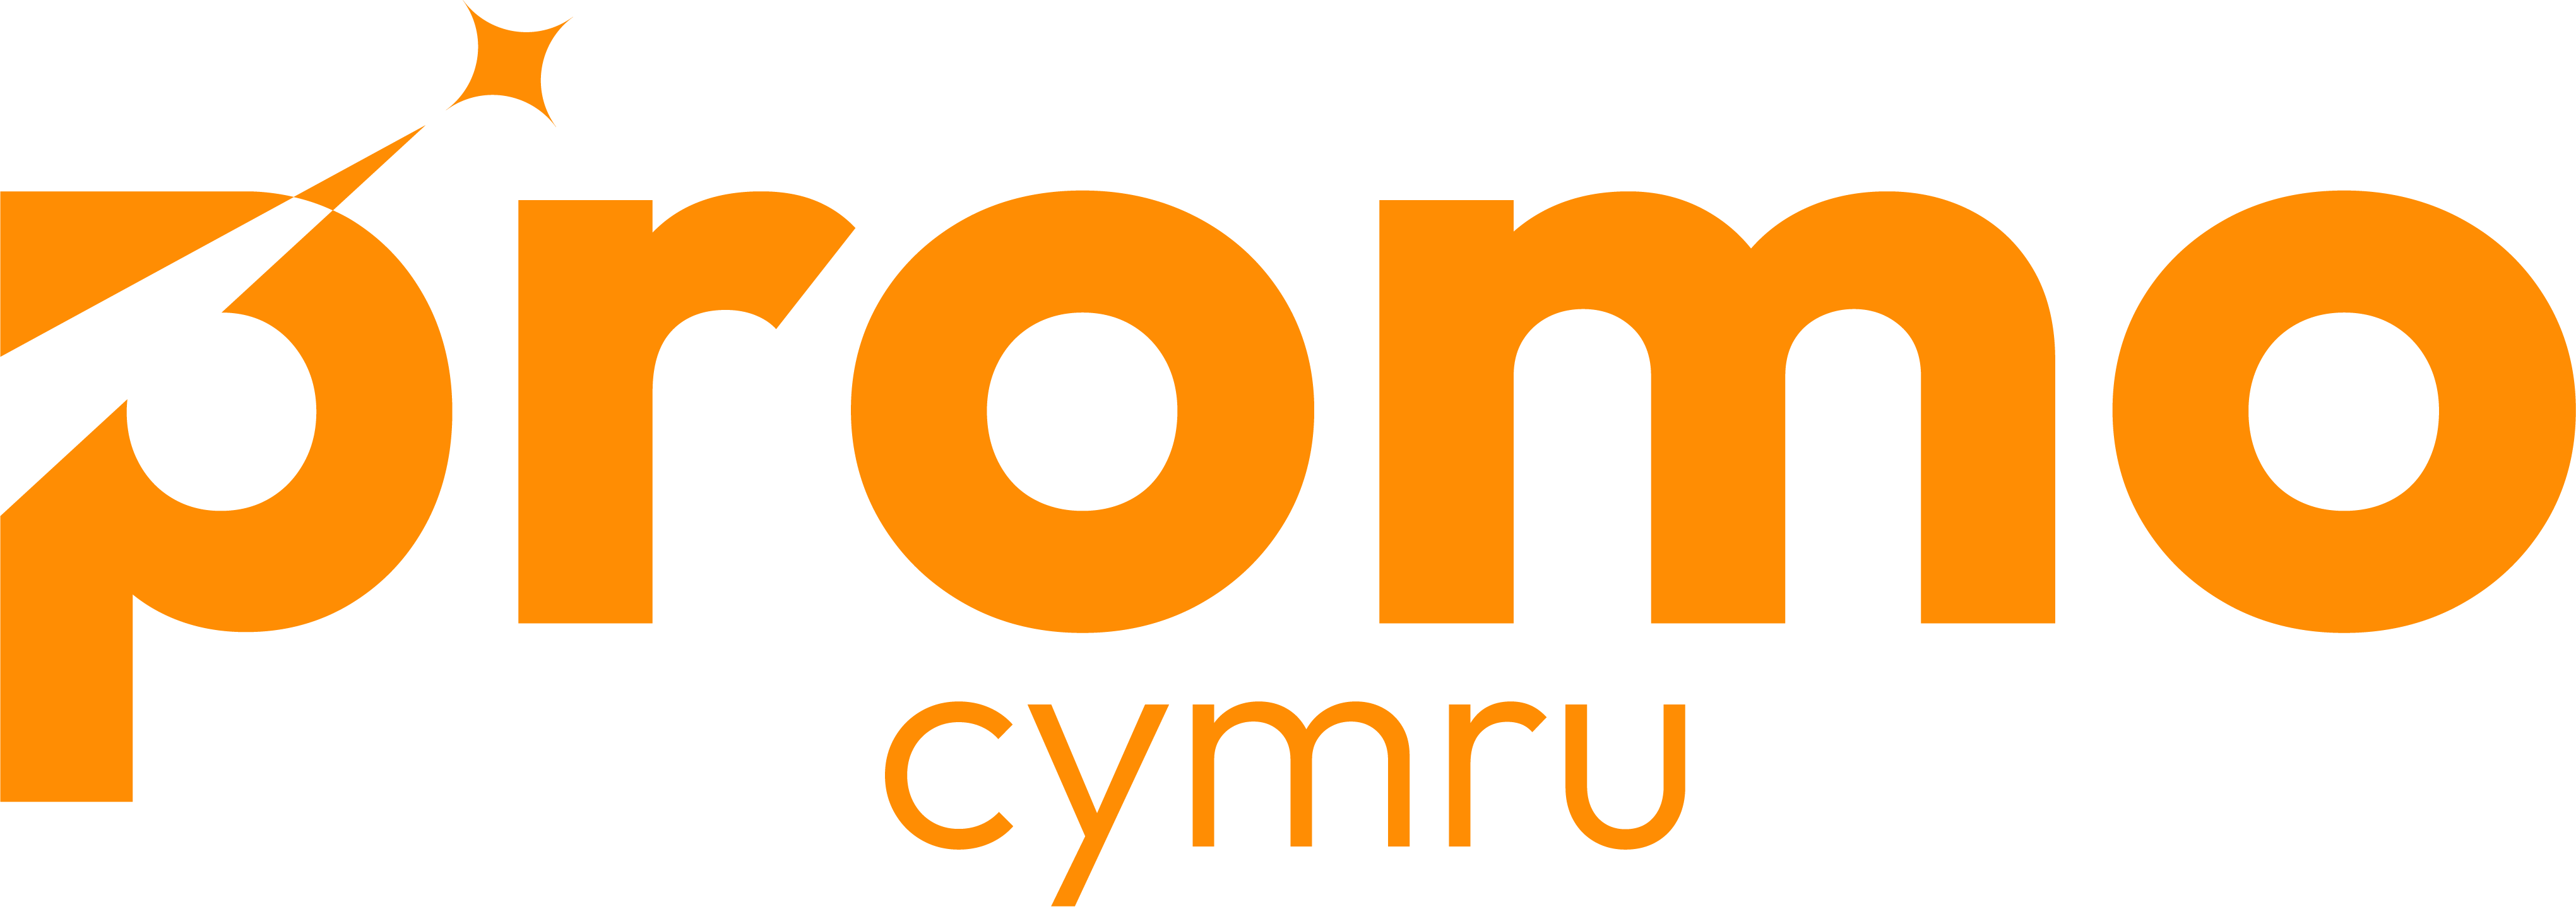 ProMo Cymru : Make it happen together